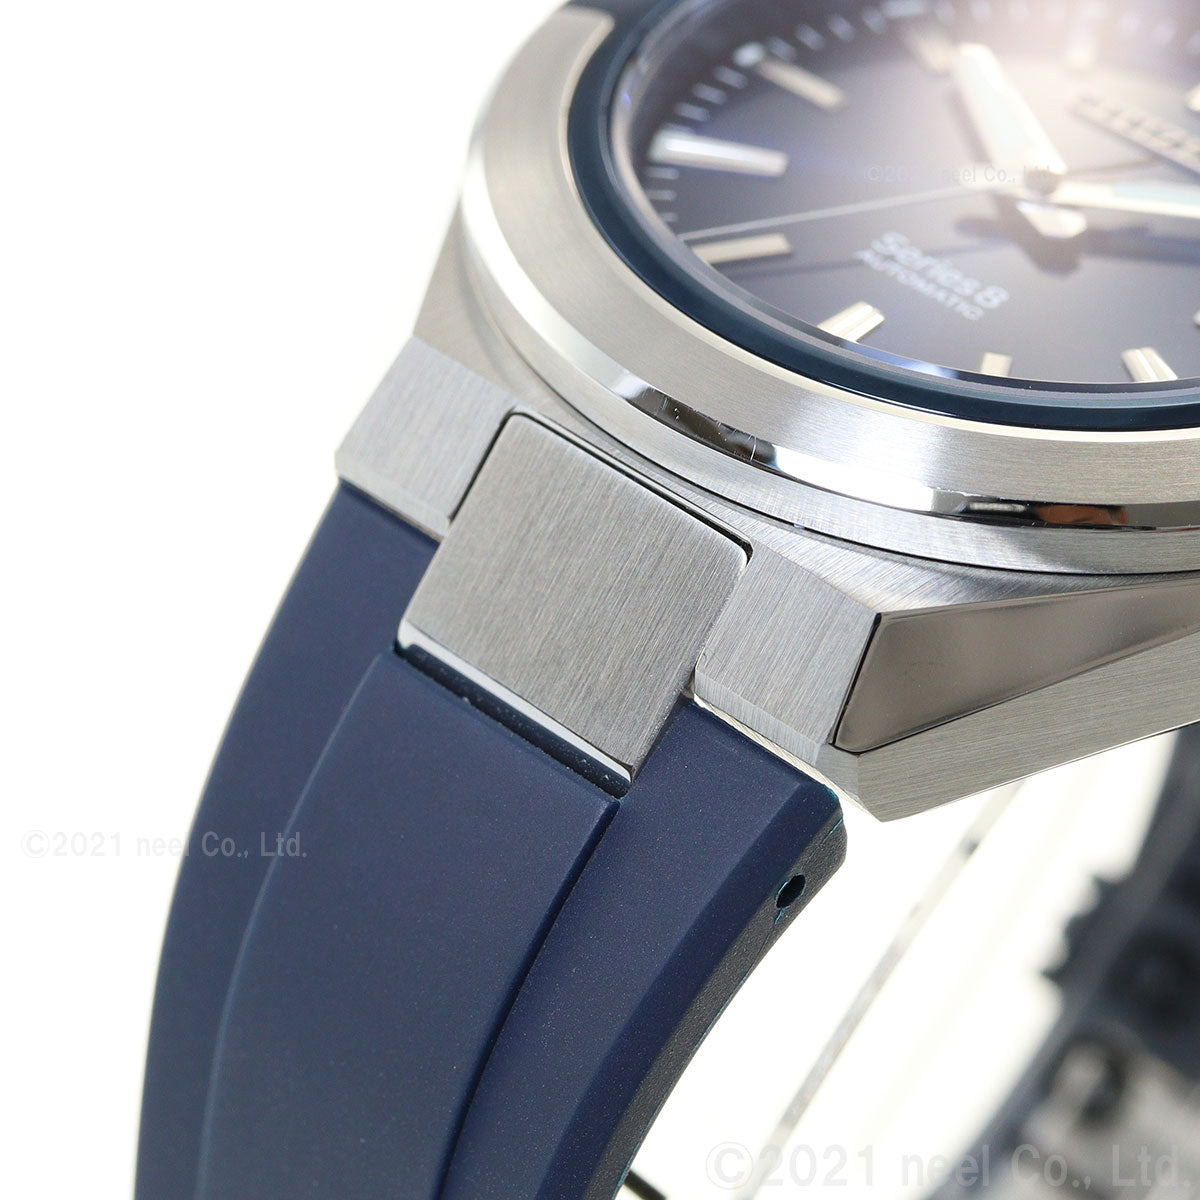 シチズン シリーズエイト CITIZEN Series 8 メカニカル 870 自動巻き 機械式 腕時計 メンズ NA1005-17L